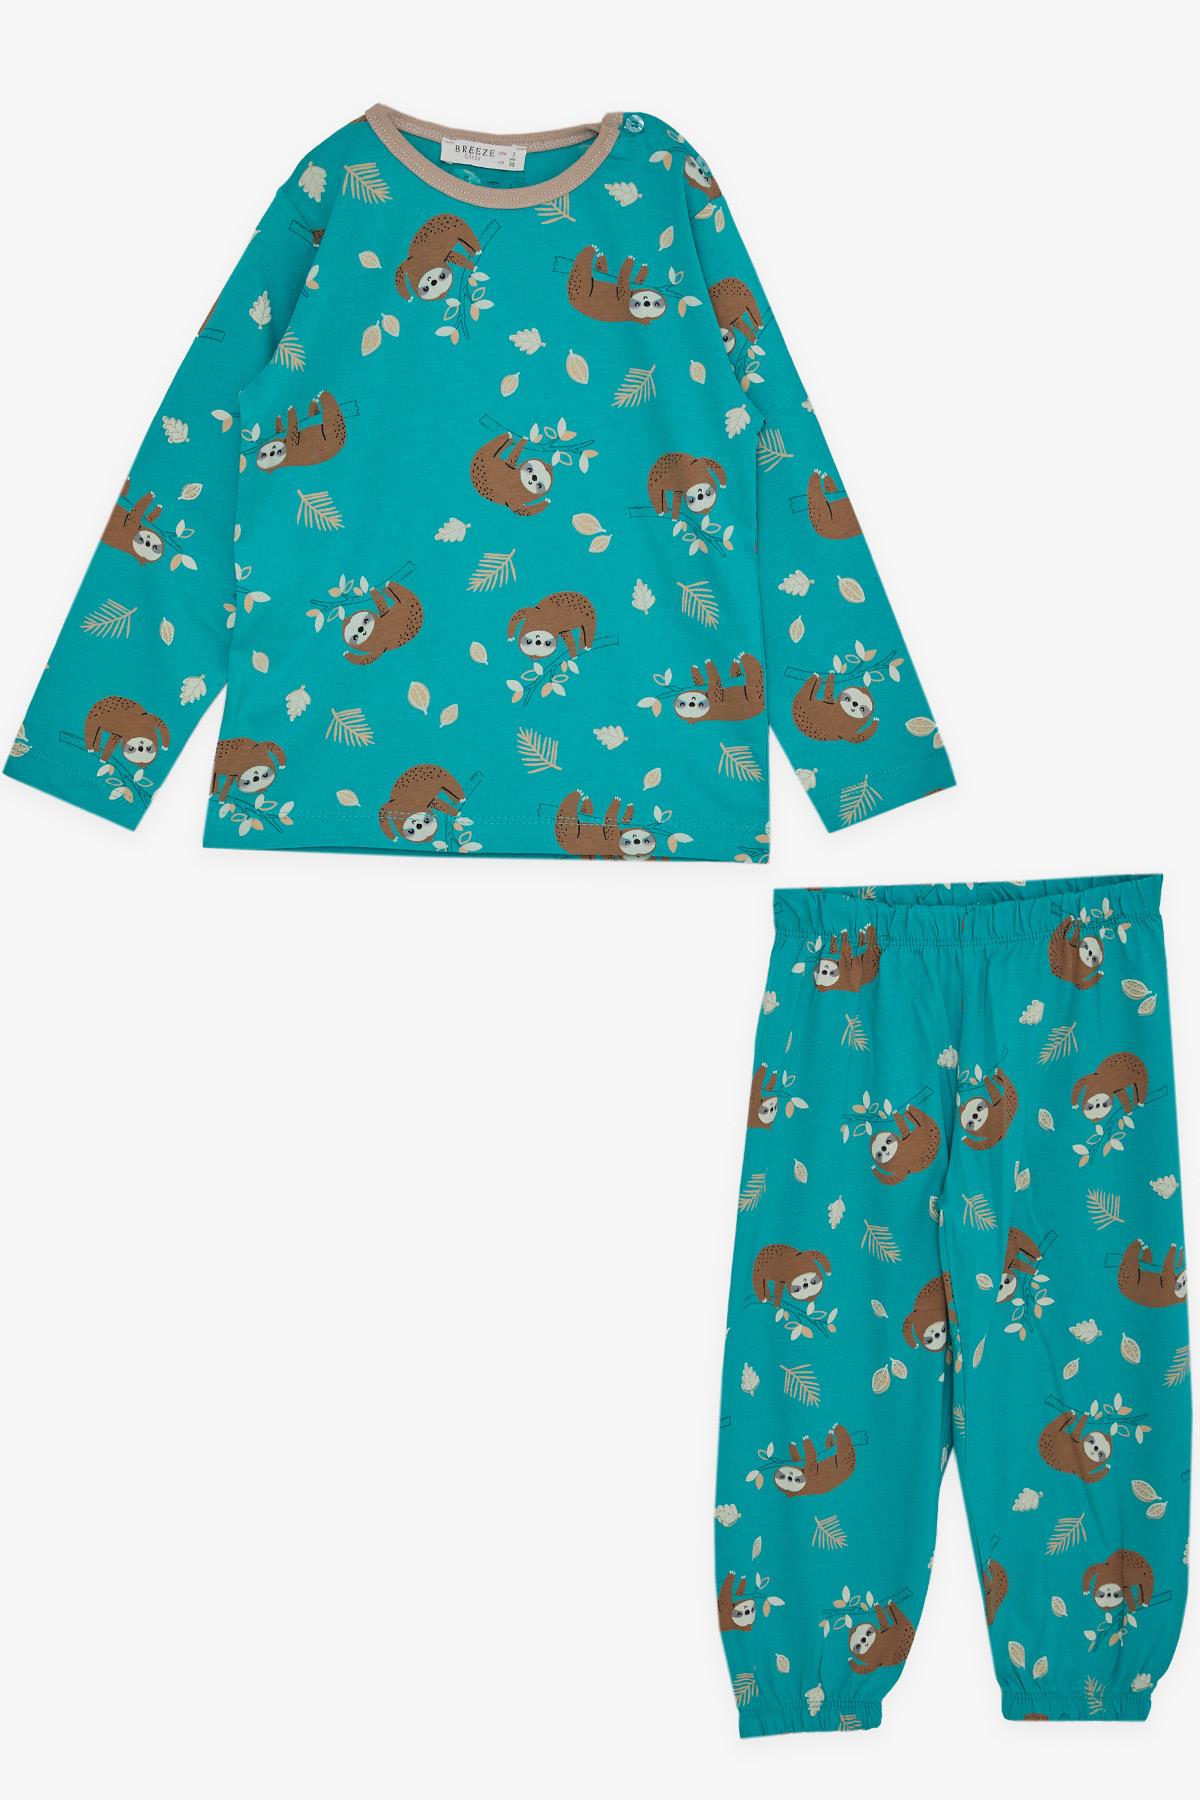 Kız Çocuk Pijama Takımı Tembel Hayvancık Desenli Yeşil 1-4 Yaş - Eğlenceli  Kız Çocuk Pijamaları| Breeze